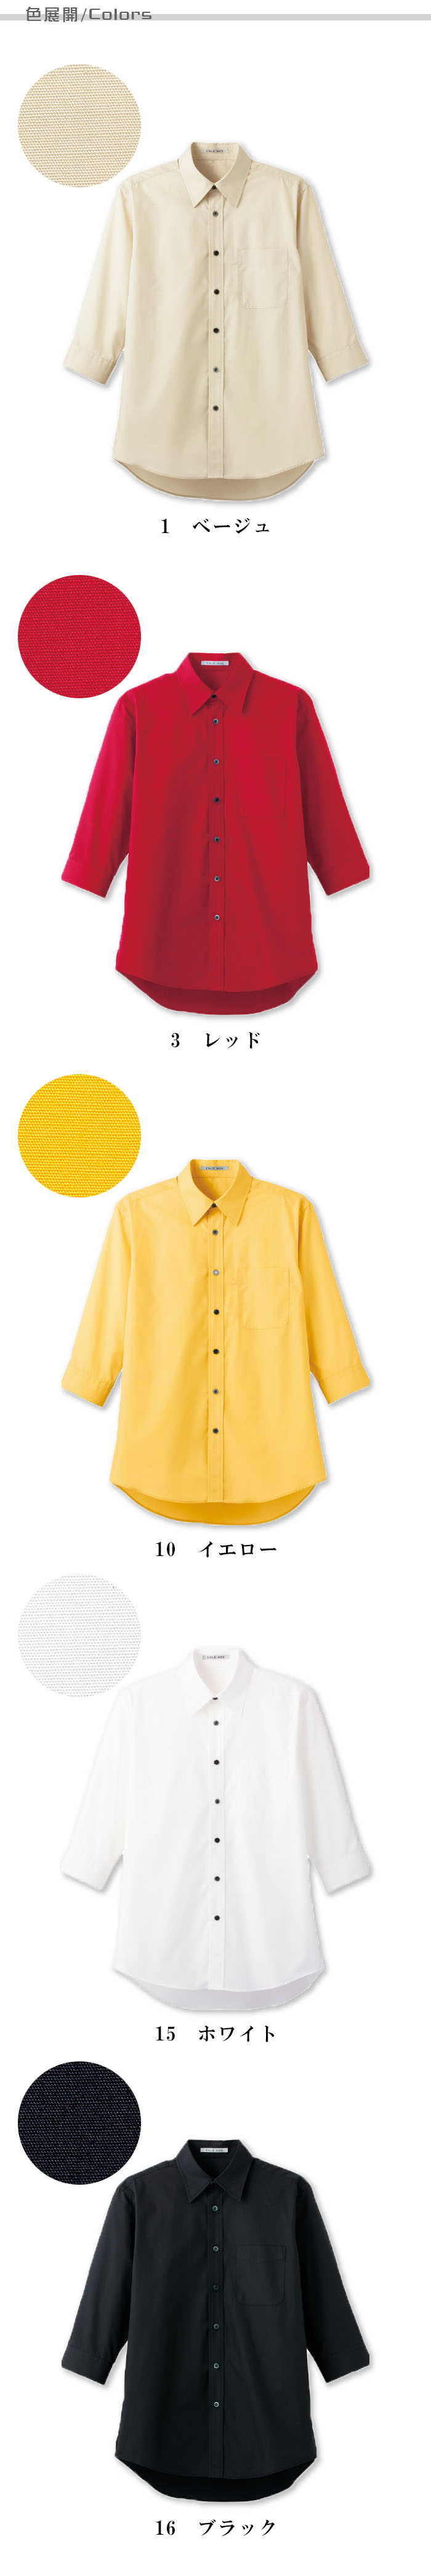 選べる10色お買い得シンプル無地七分袖ブロードシャツ【Unisex】色展開一覧